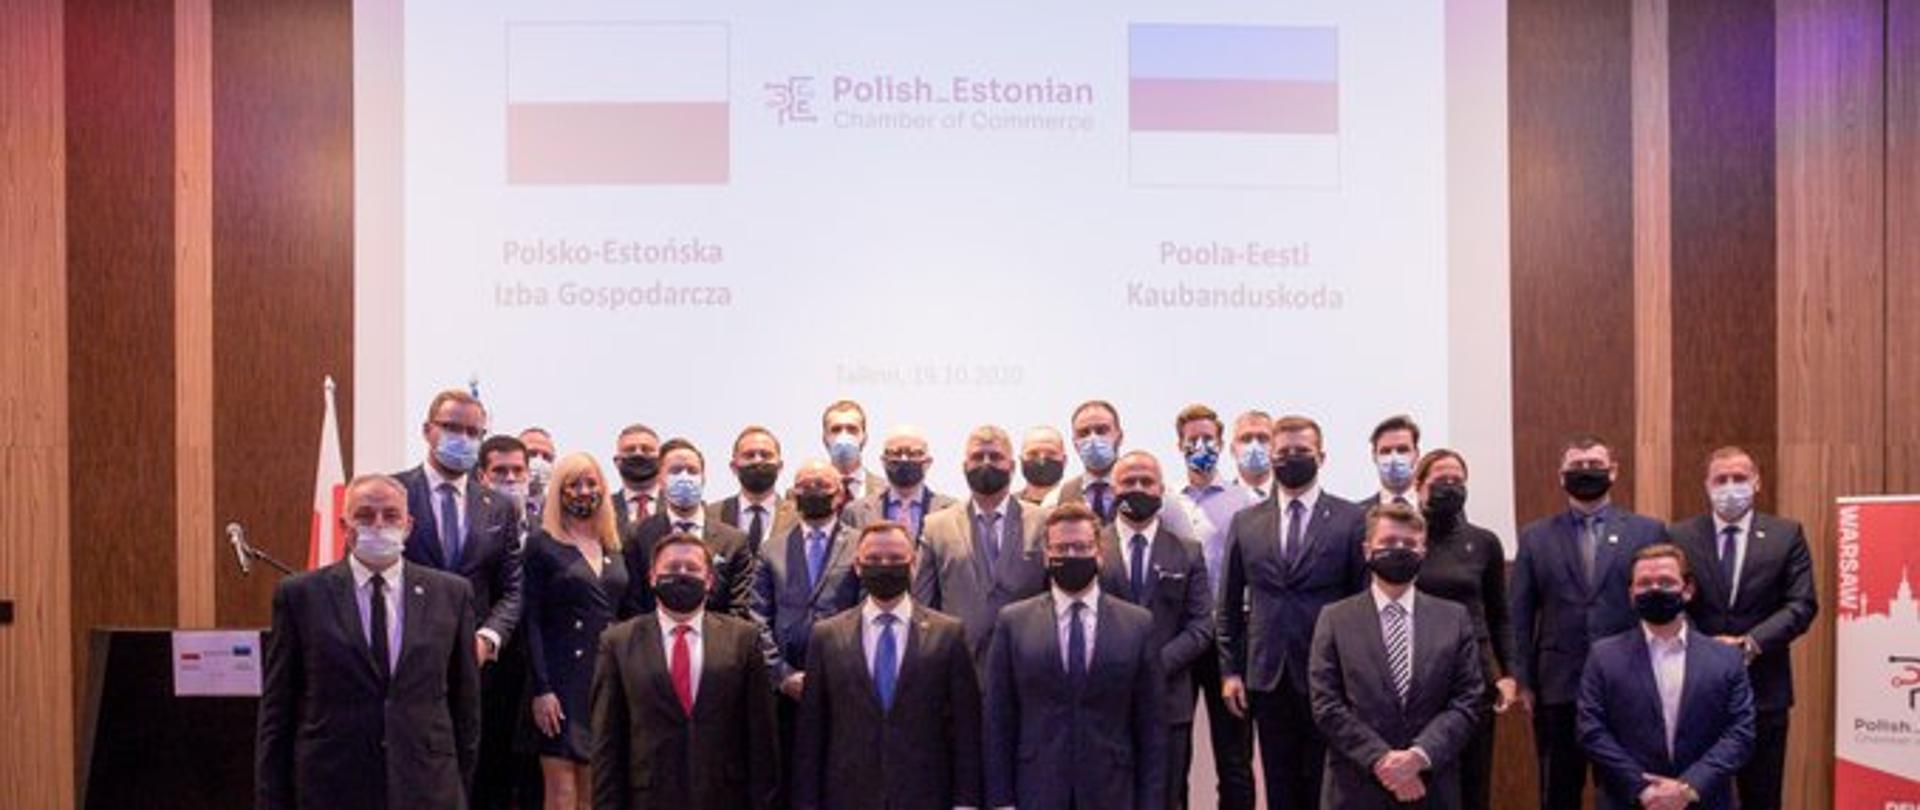 Polsko-Estońska Izba Gospodarcza 